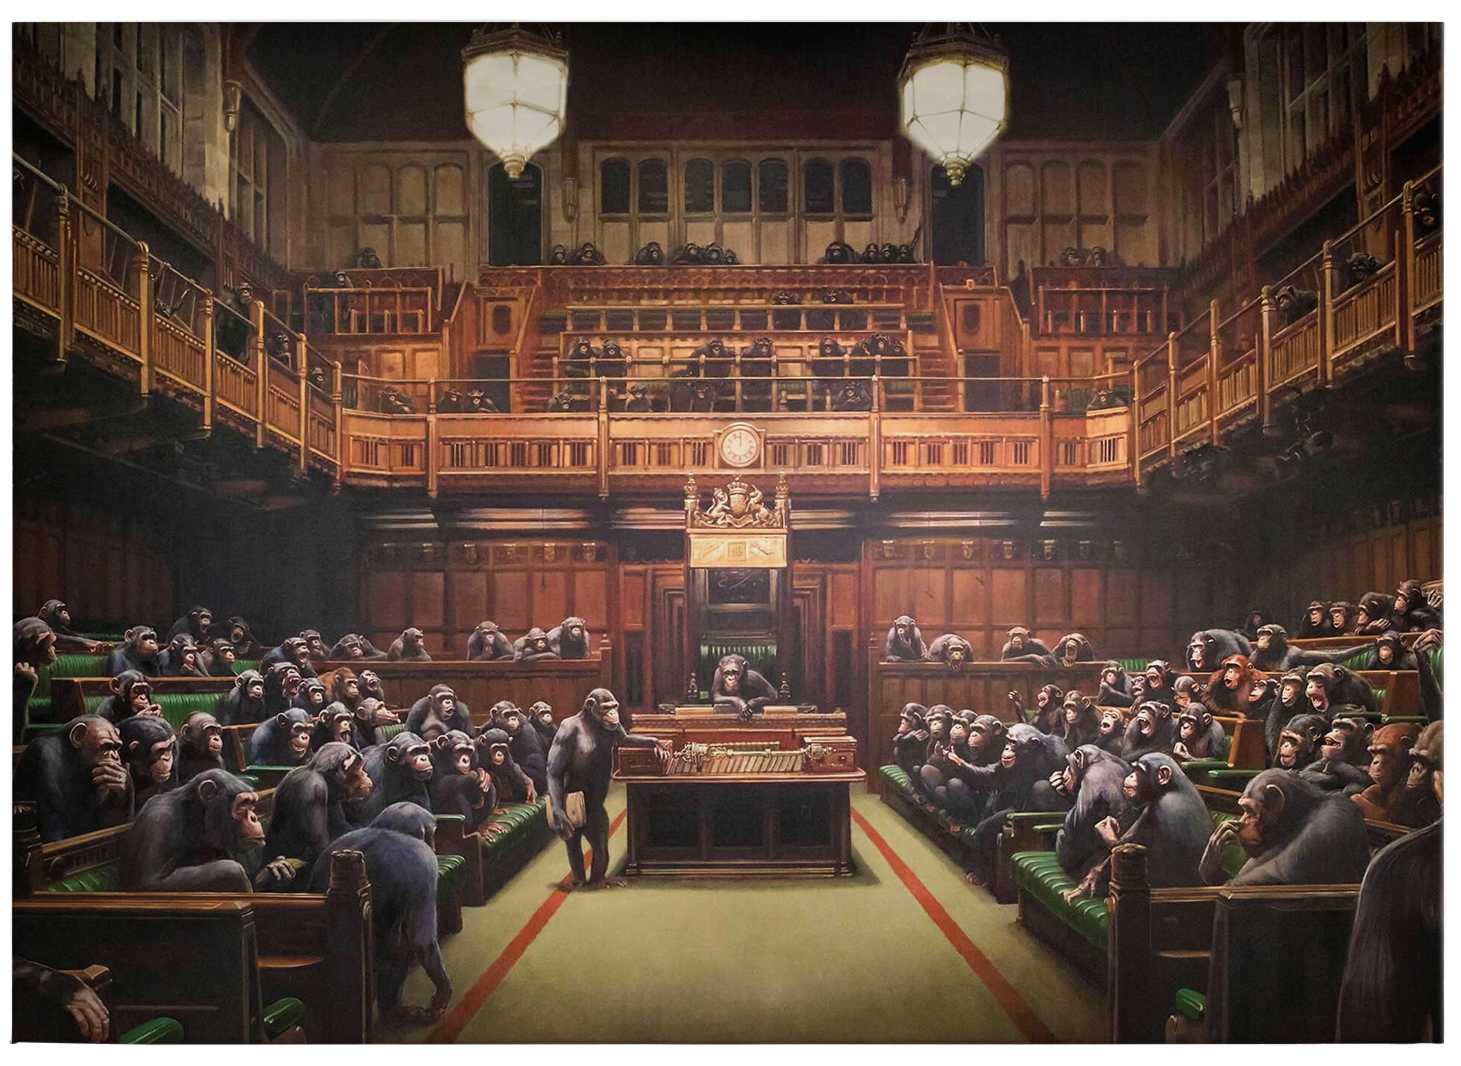             Lienzo Banksy "Parlamento descentralizado" - 0,70 m x 0,50 m
        